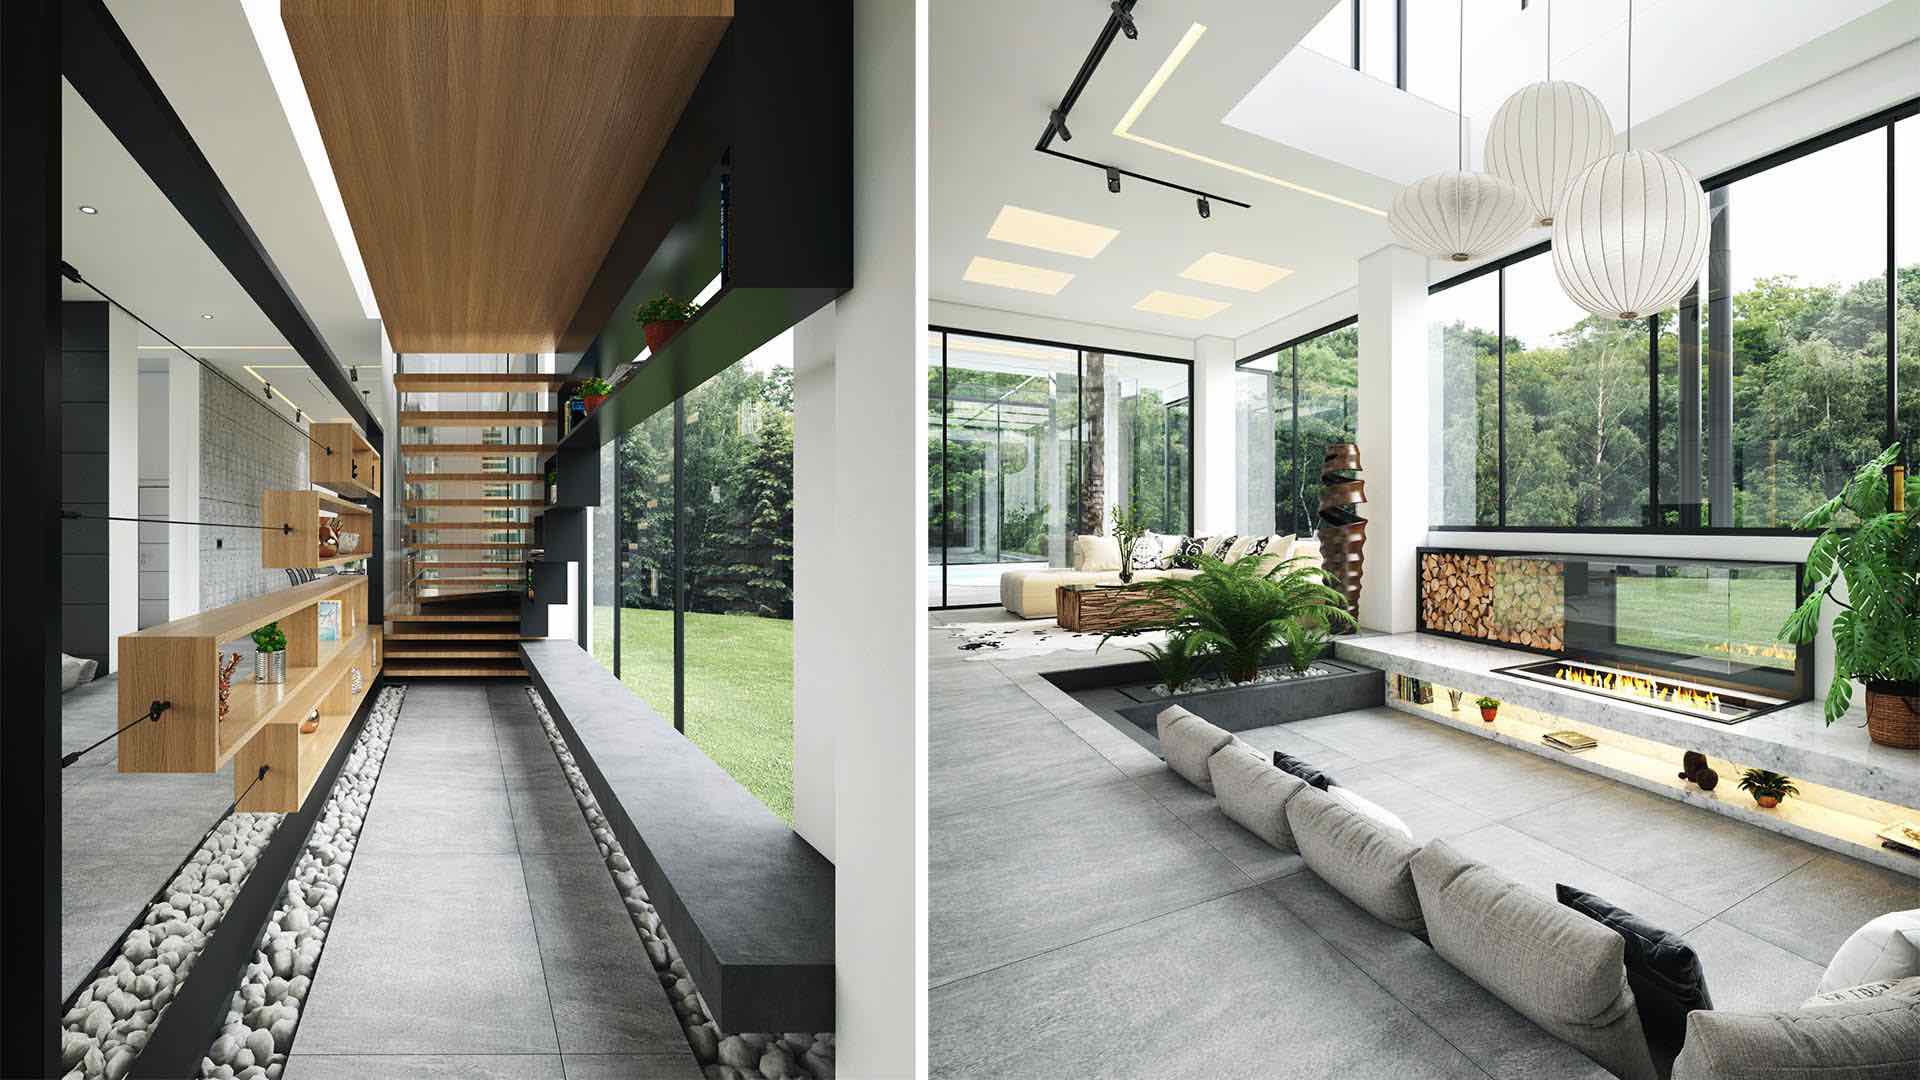 Thiết kế nội thất biệt thự hiện đại - “hòa hợp” cùng thiên nhiên | Nguồn ảnh: Amir Abbas Habibi.